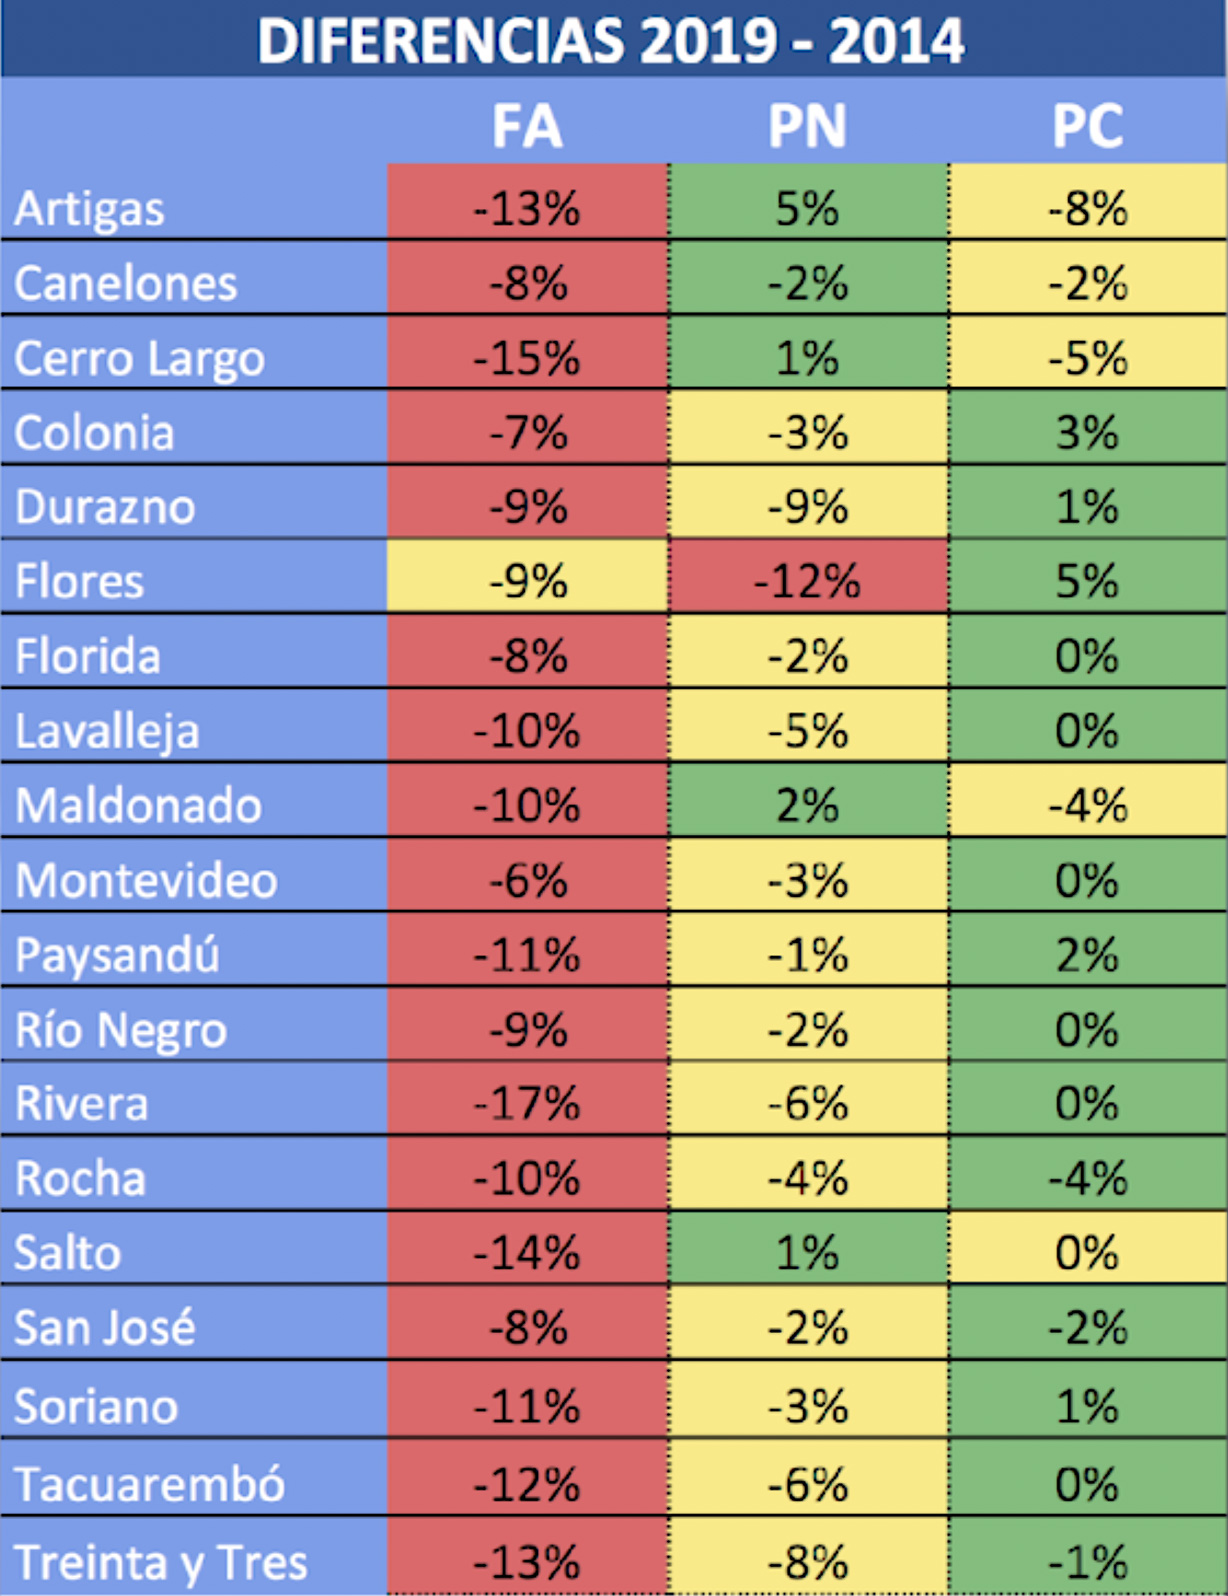 Todos los números y resultados de Argentina vs. Uruguay - LA NACION